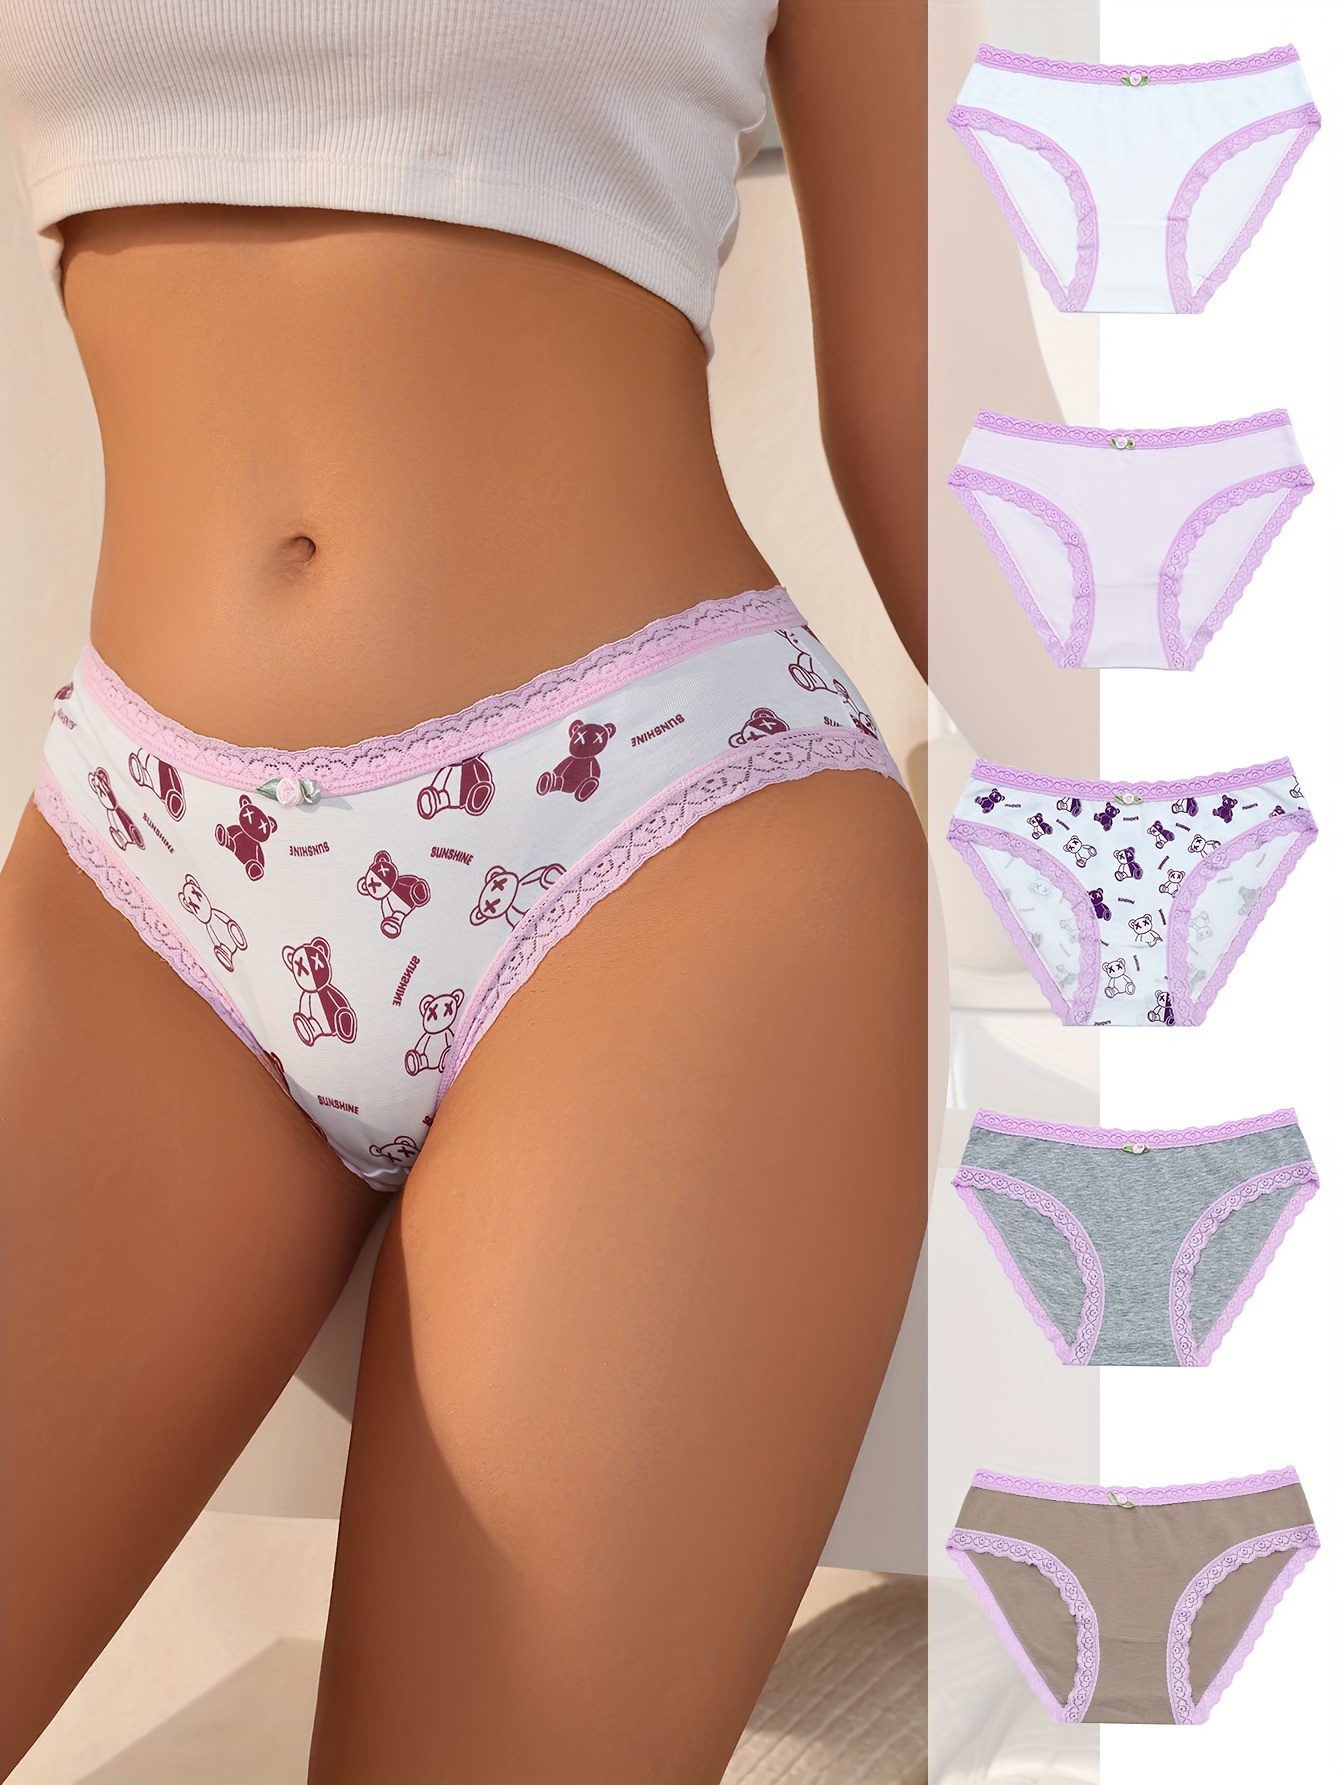 8pcs Rose Jacquard Cotton Briefs, Breathable Elastic High Waist Panties,  Women's Lingerie & Underwear